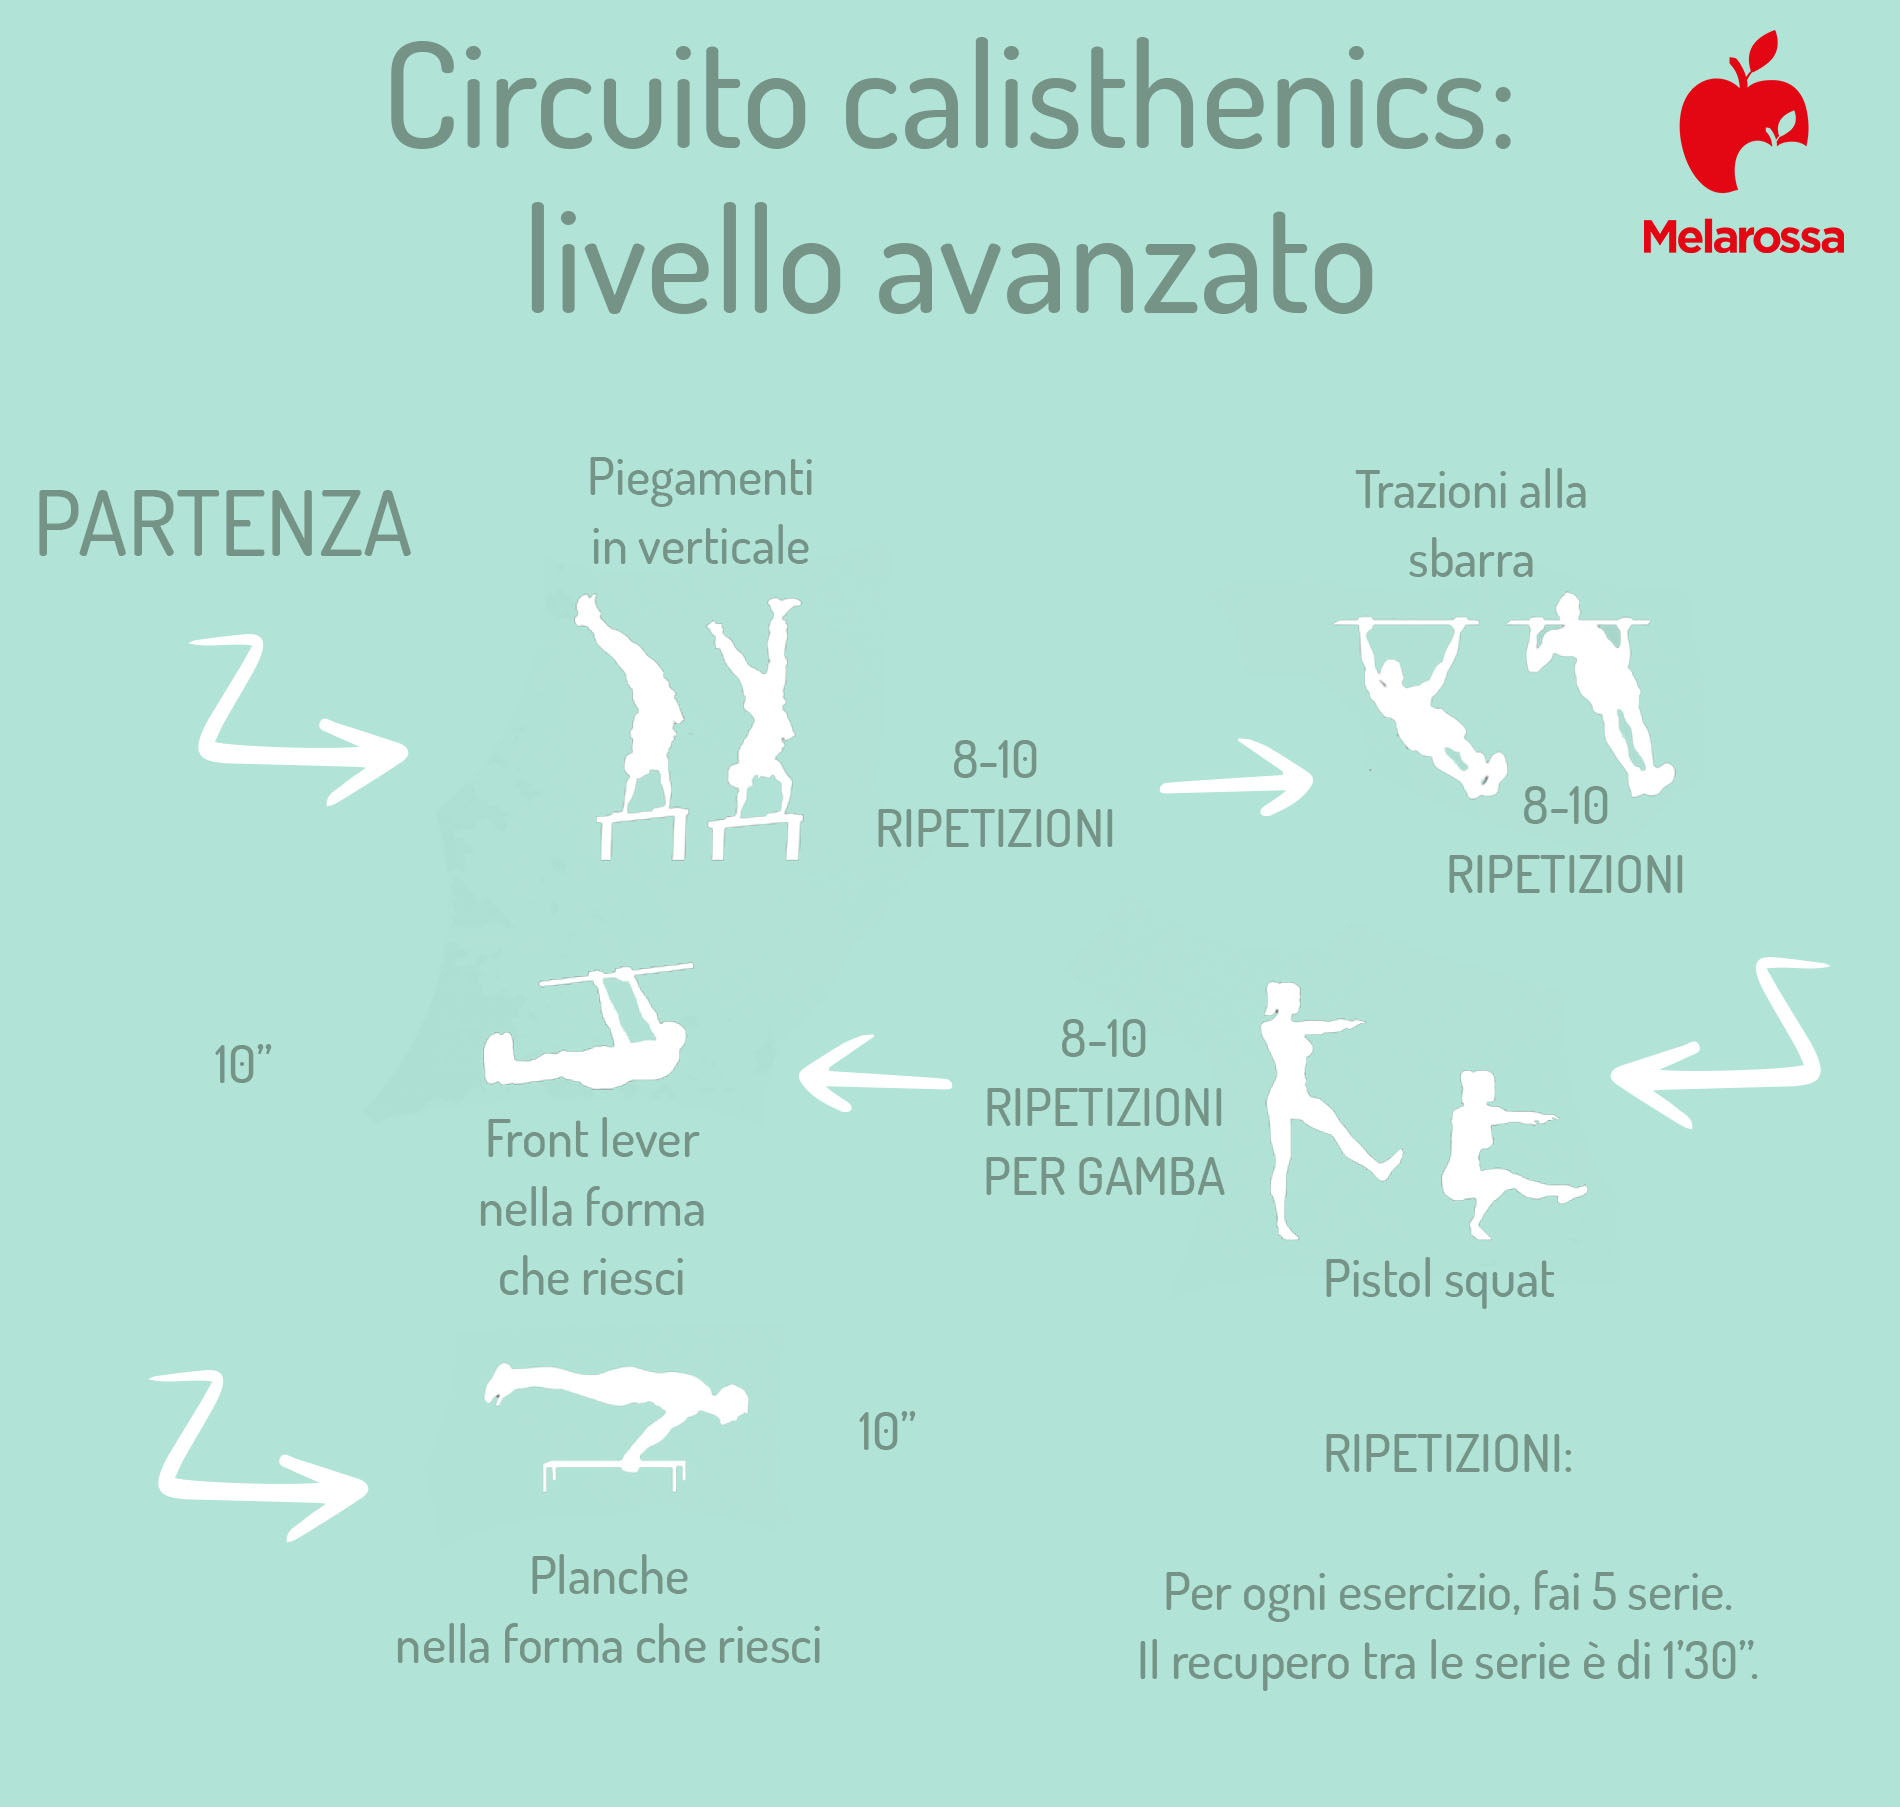 calisthenics: circuito livello avanzato